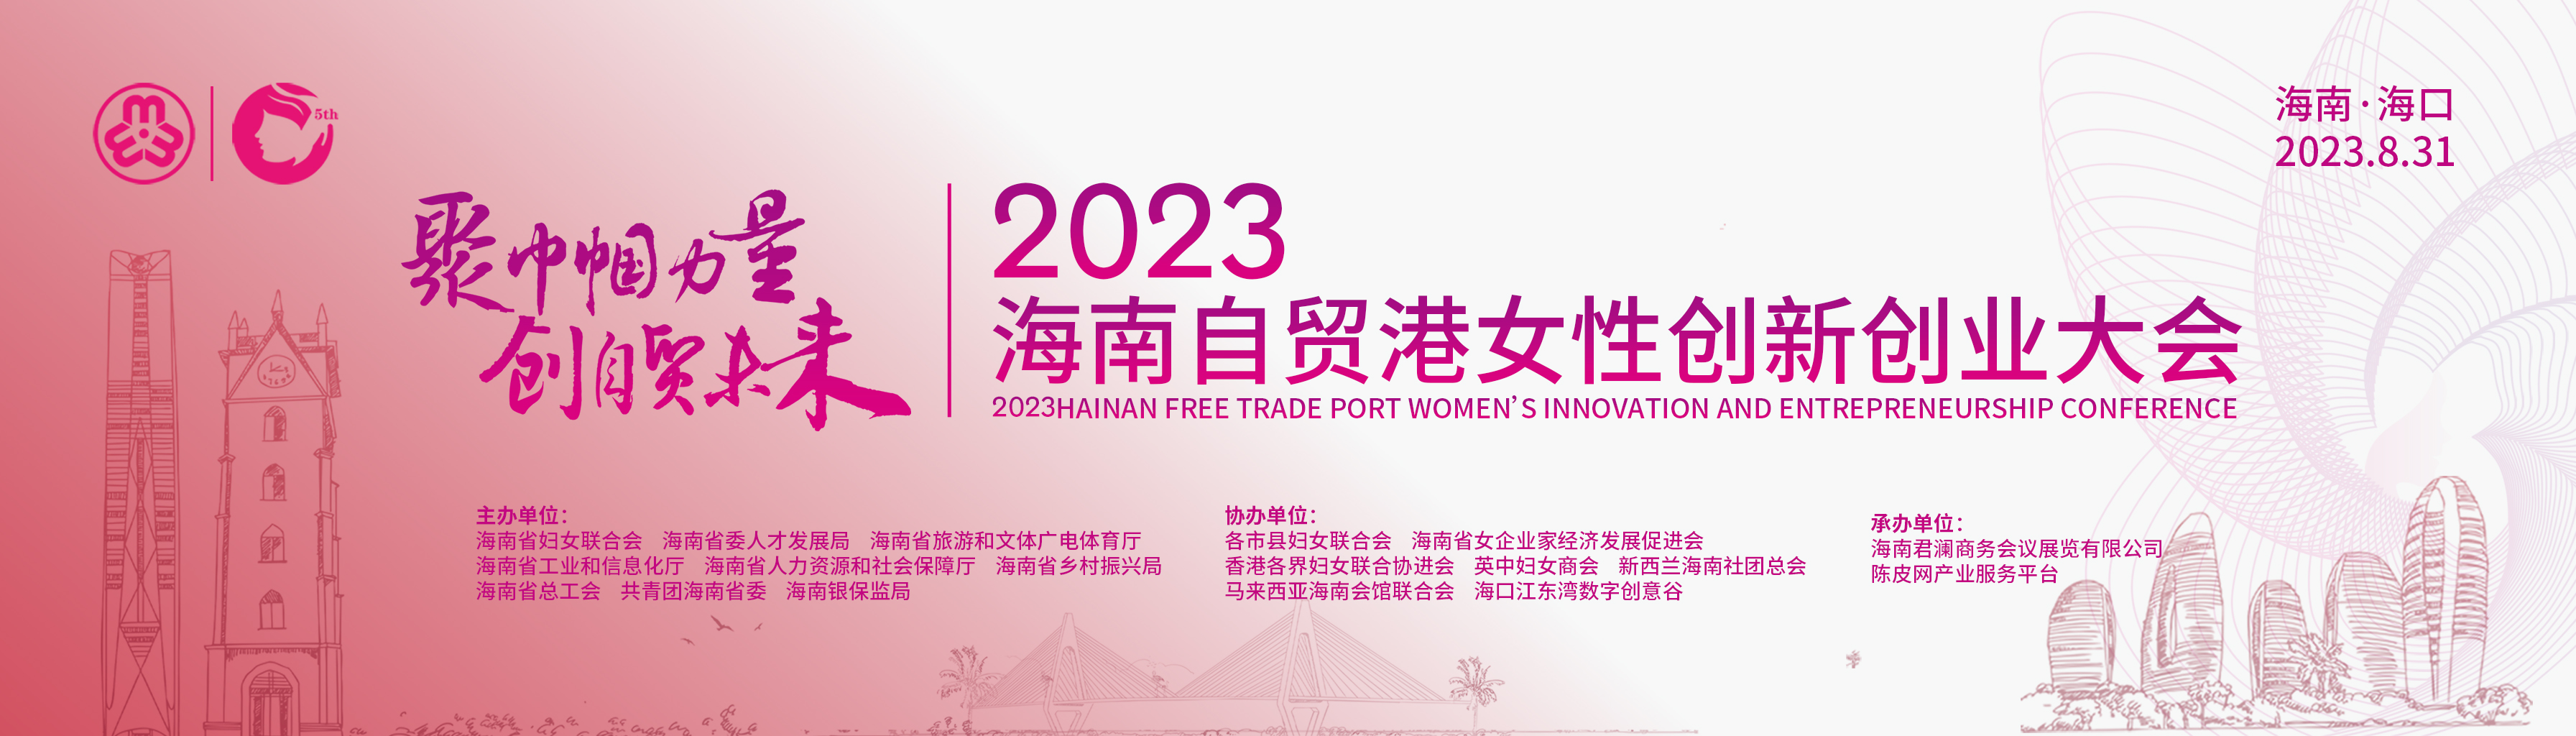 2023海南自贸港女性创新创业大会暨2023年海南自贸港女性创新创业大赛颁奖典礼